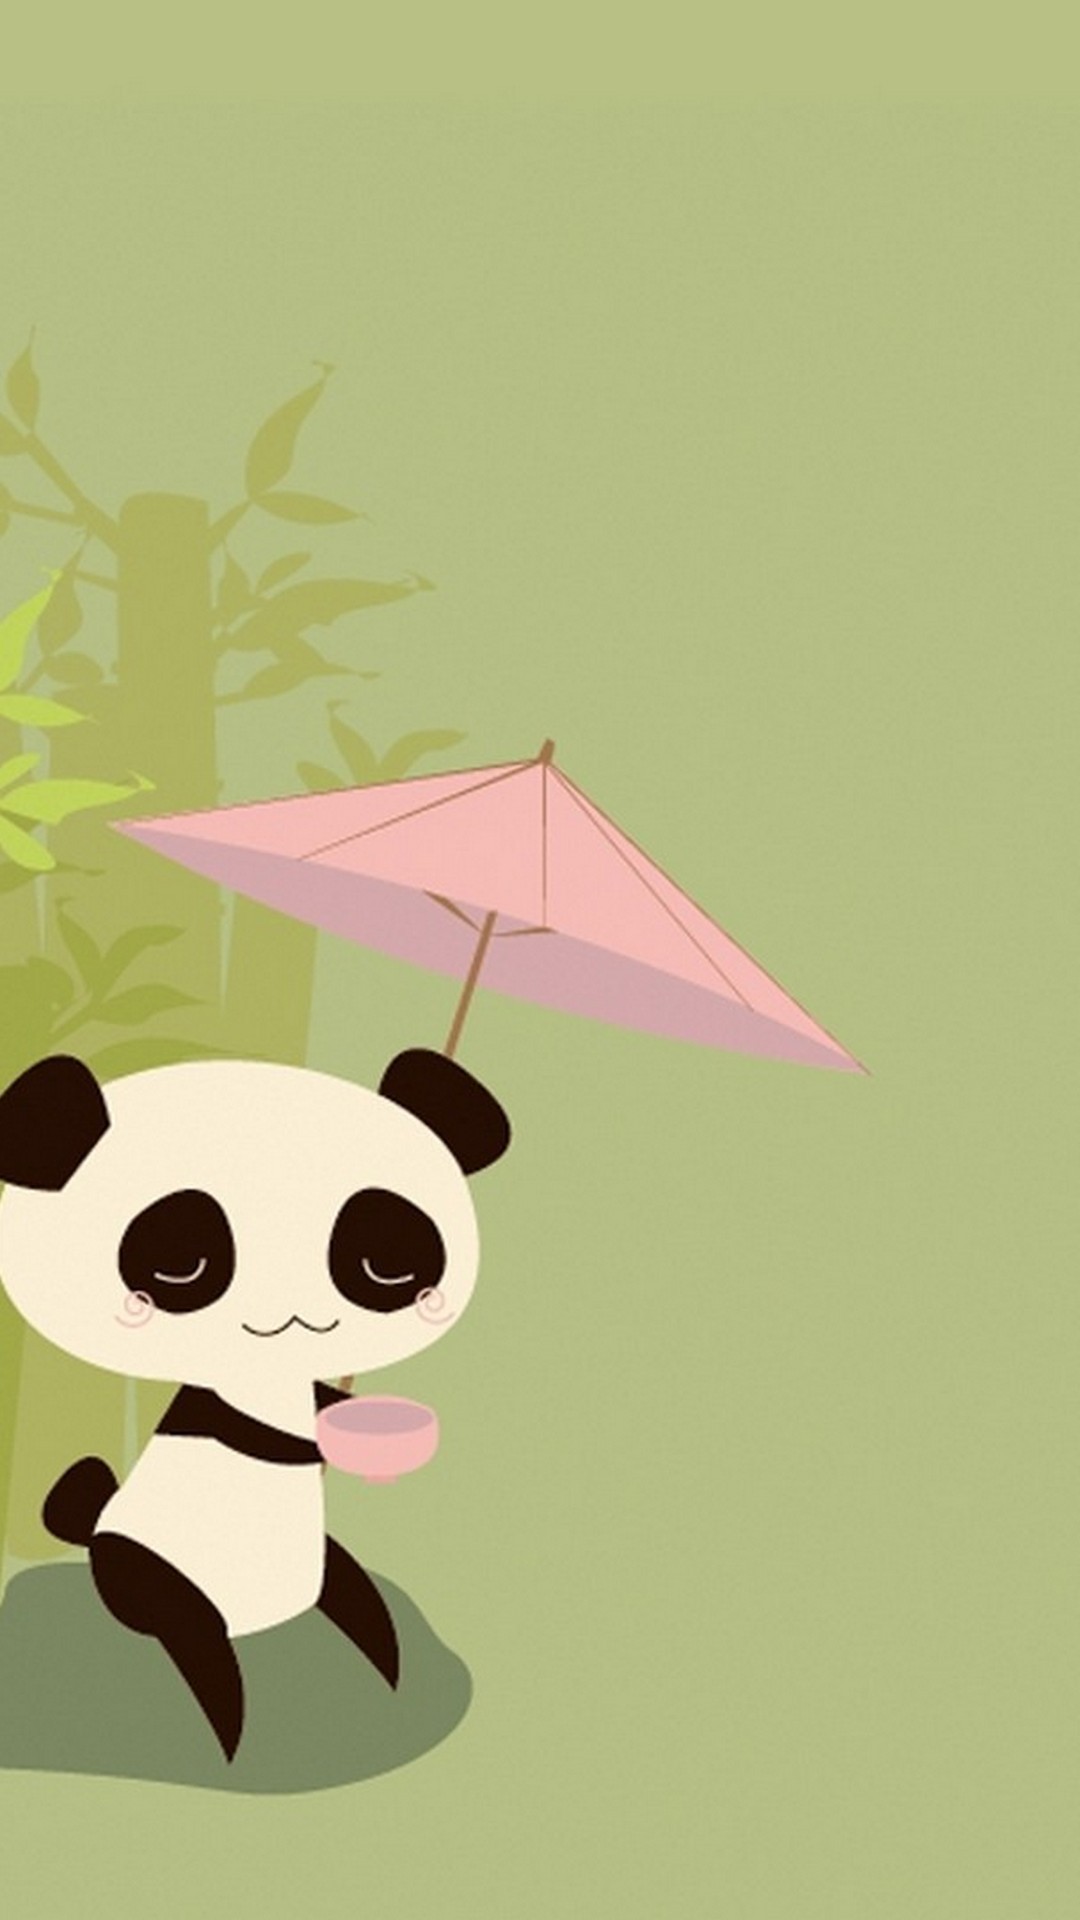 panda wallpaper,cartoon,illustration,umbrella,art,kite